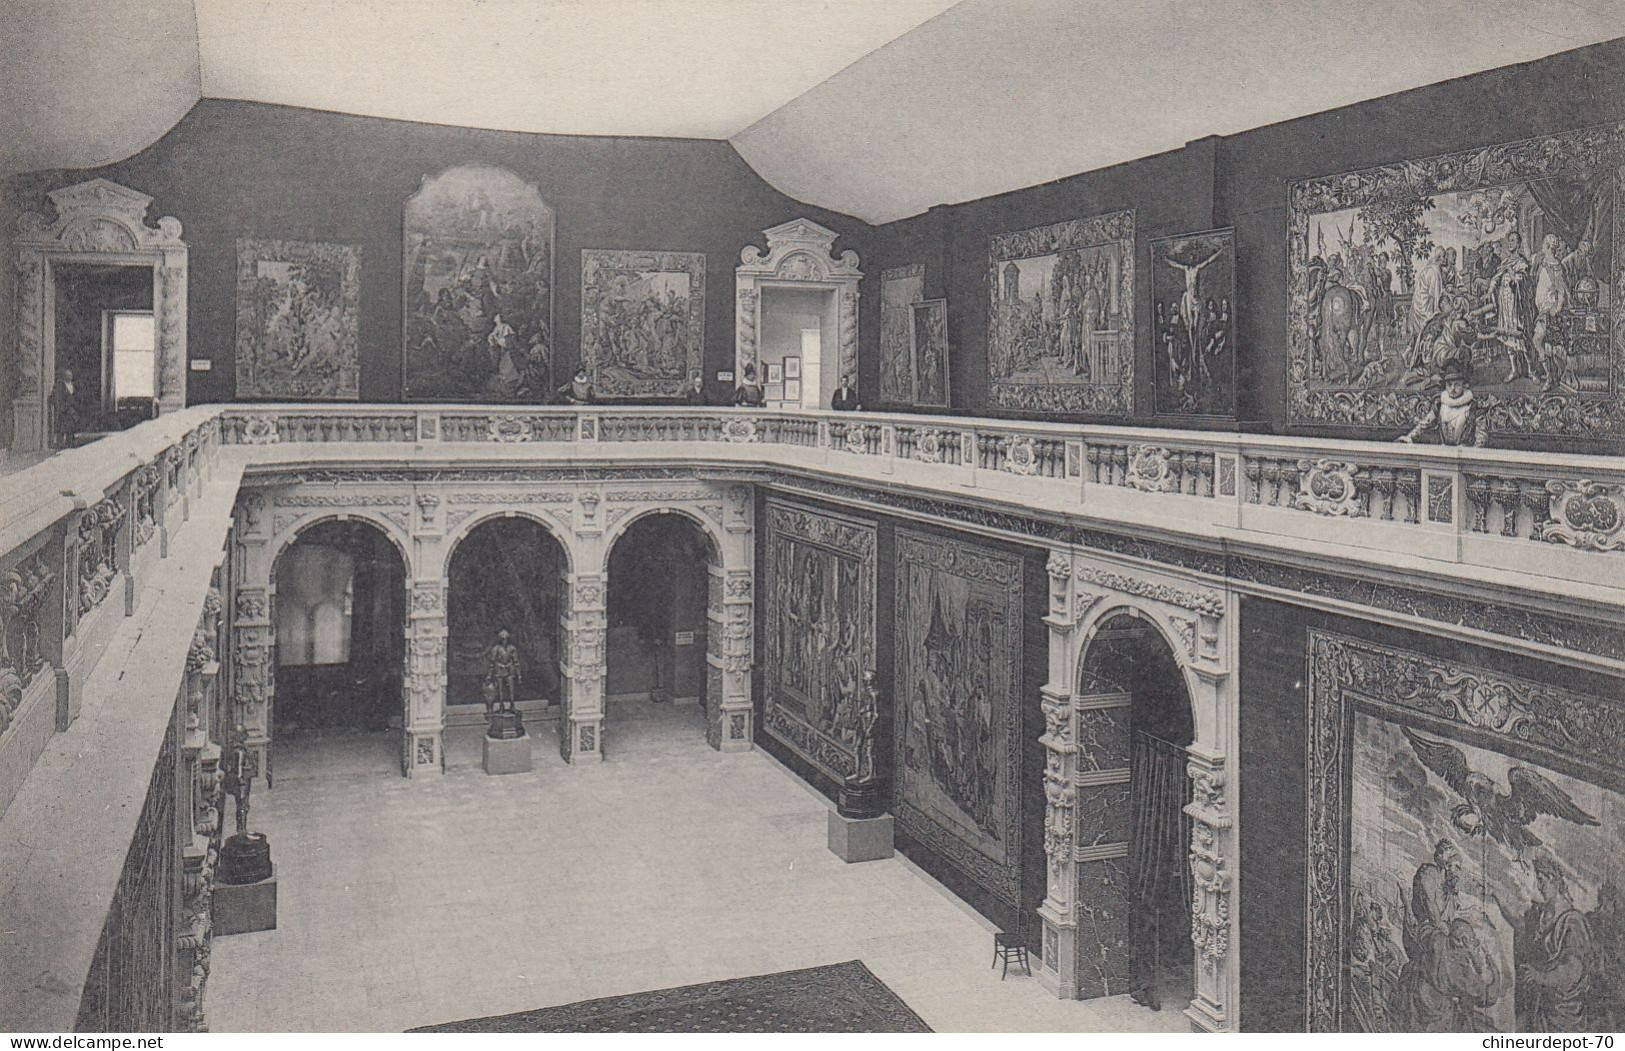 EXPOSITION D ART ANCIEN PALAIS DU CINQUANTENAIRE BRUXELLES 1910 - Wereldtentoonstellingen